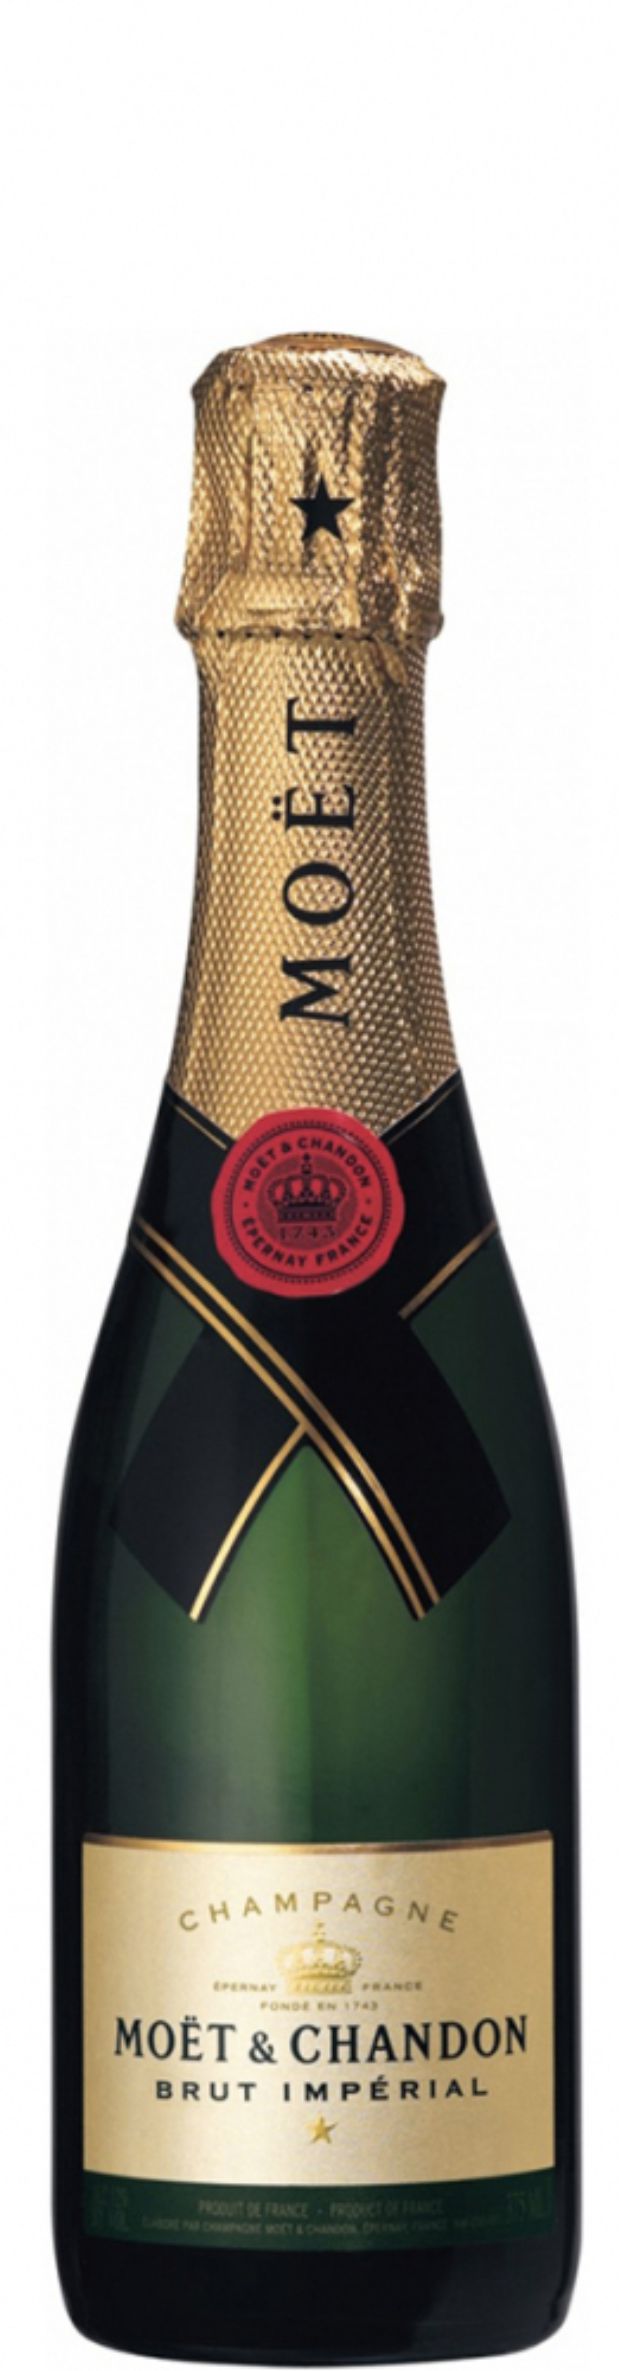 Шампанское Моэт и Шандон Брют Империал, белое брют, 0.375 л